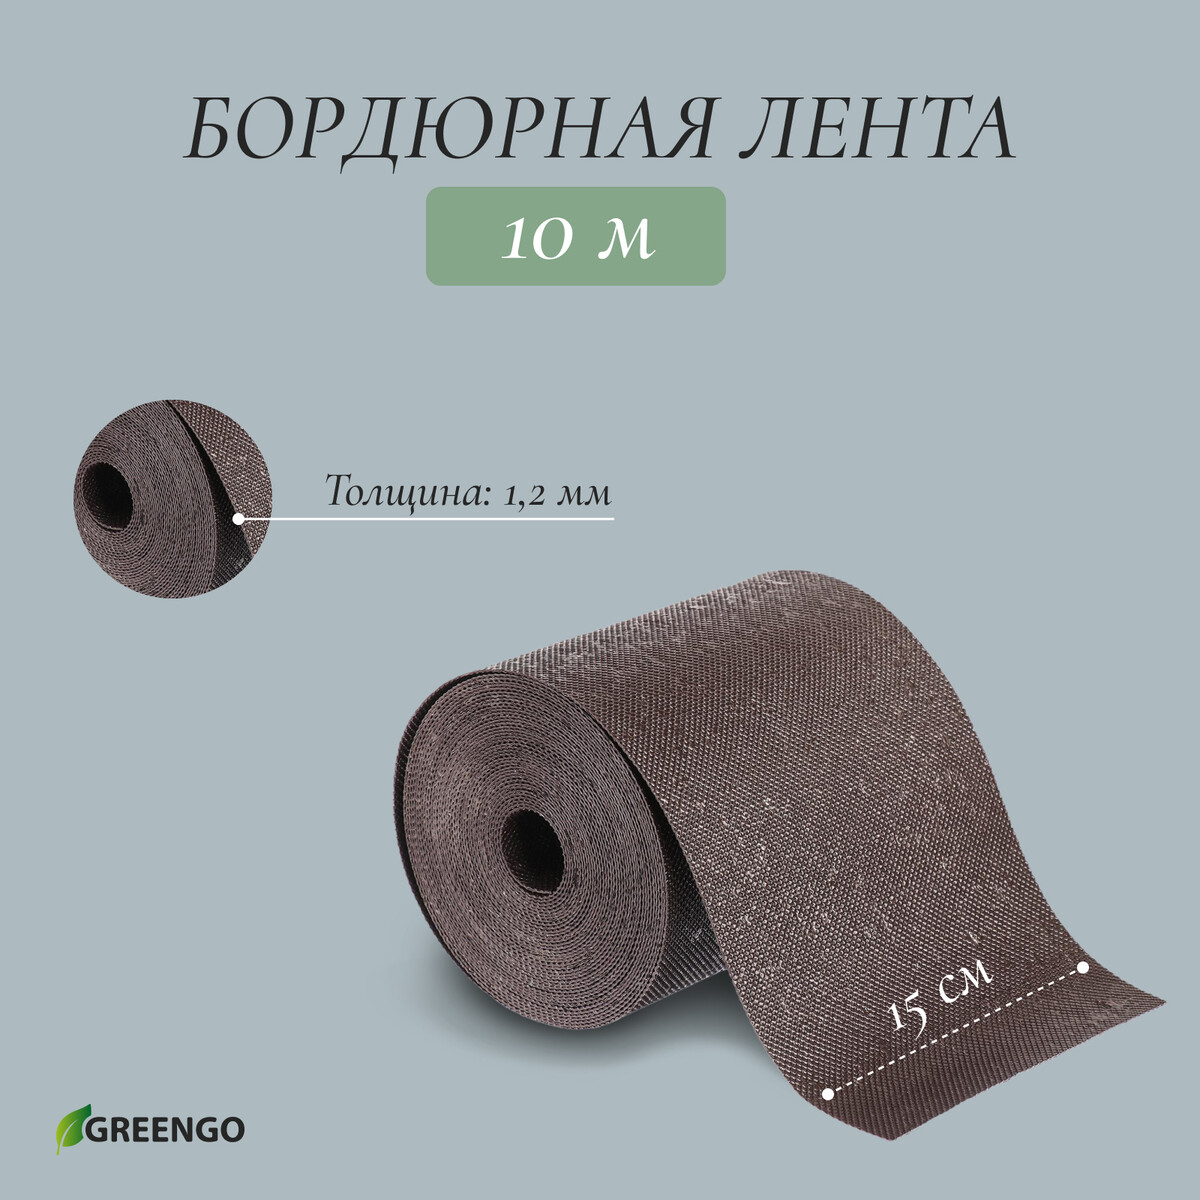 Лента бордюрная, 0.15 × 10 м, толщина 1.2 мм, пластиковая, коричневая, greengo лента бордюрная 0 1 × 10 м толщина 1 2 мм пластиковая коричневая greengo